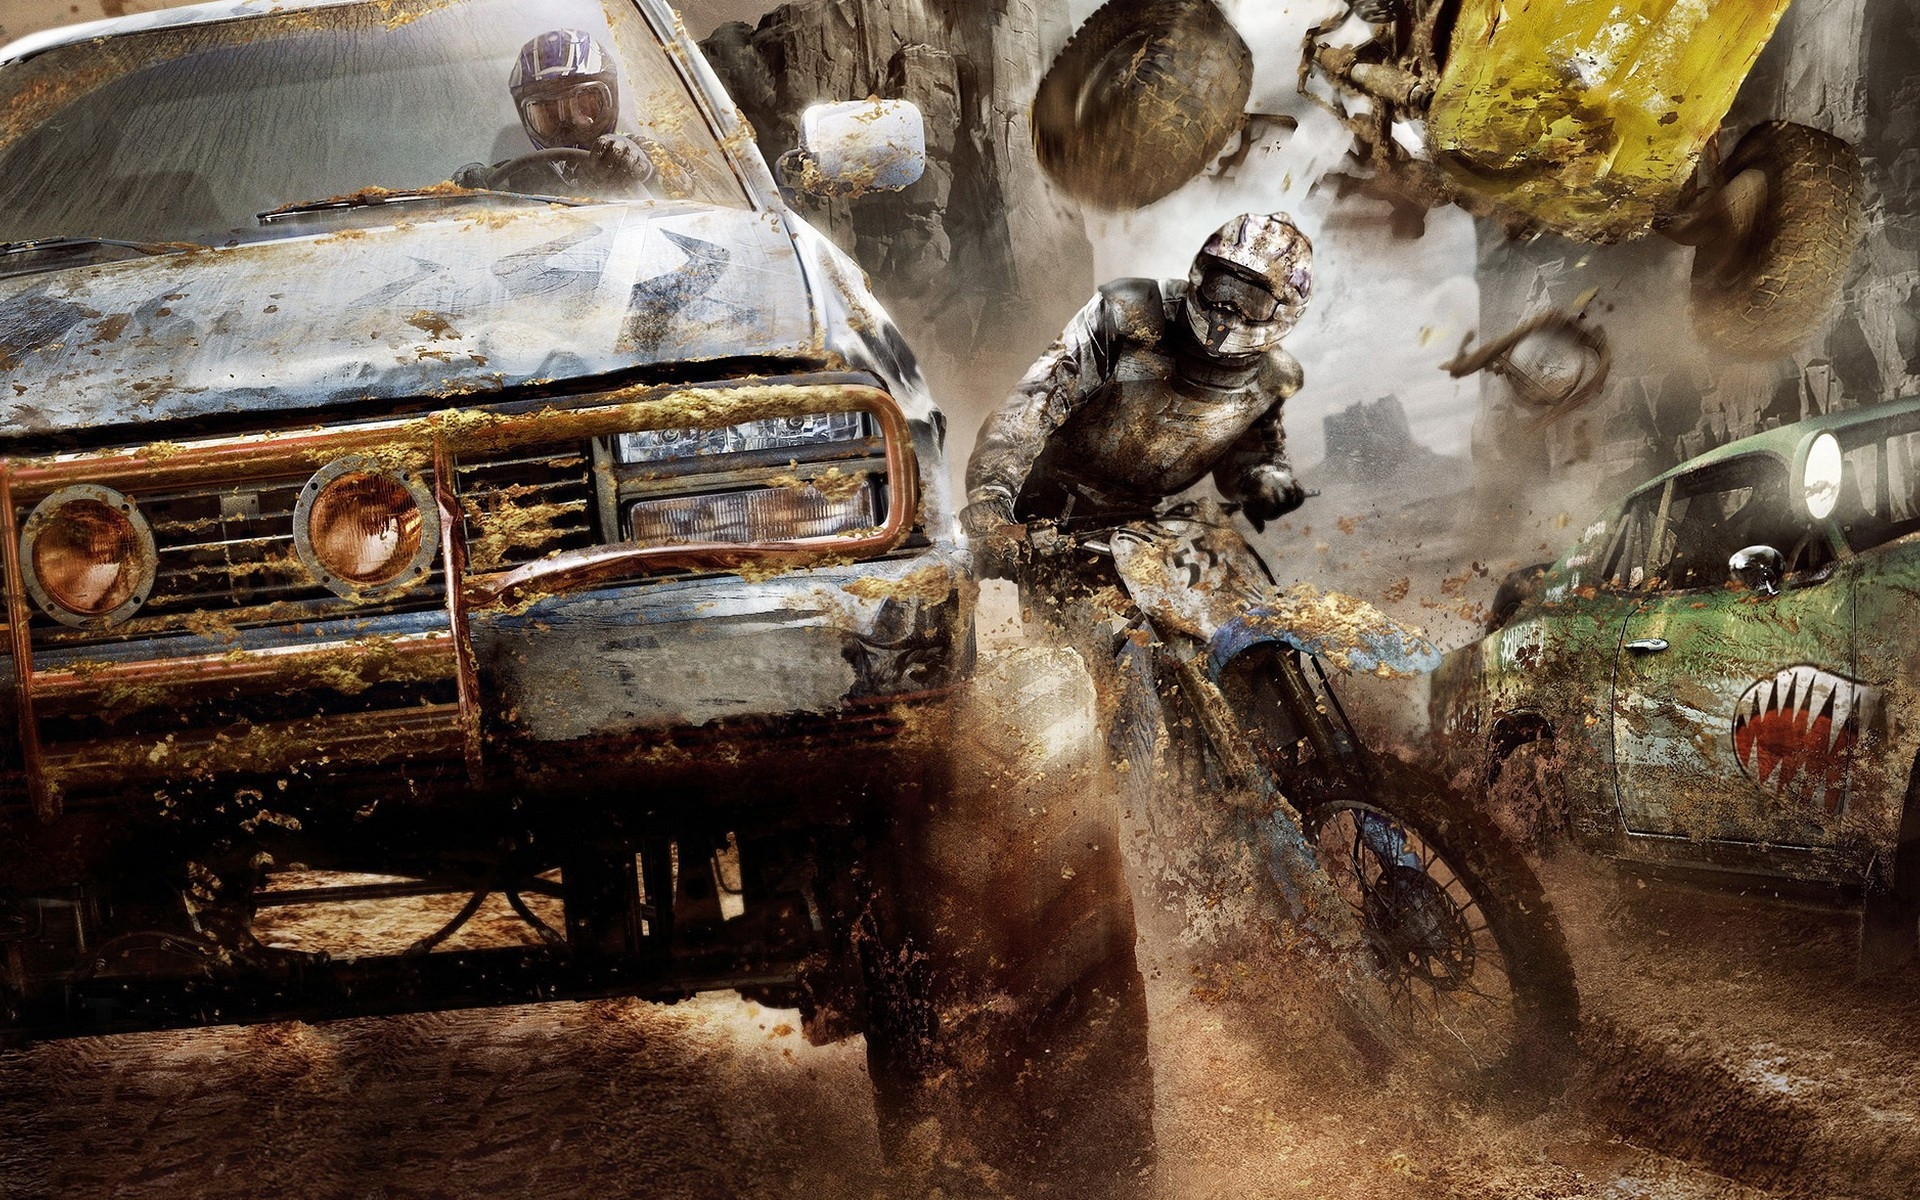 Картинки Моторный штурм апокалипсис, мотоцикл, автомобиль, авария, песок фото и обои на рабочий стол